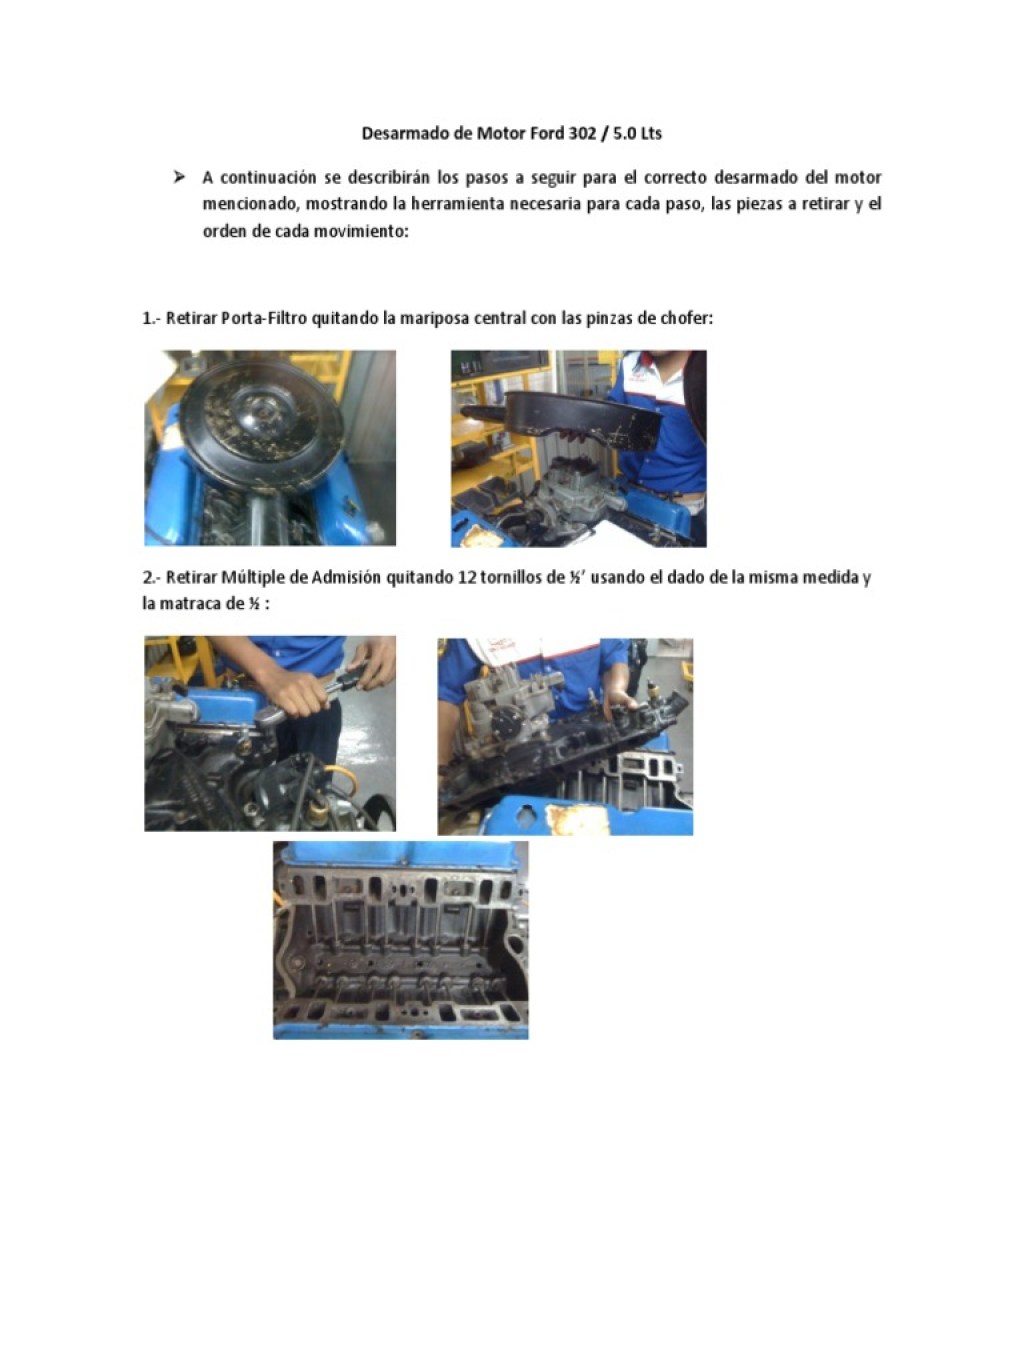 Picture of: Desarmado de Motor Ford  Lts  PDF  Vehículos  Tecnología de